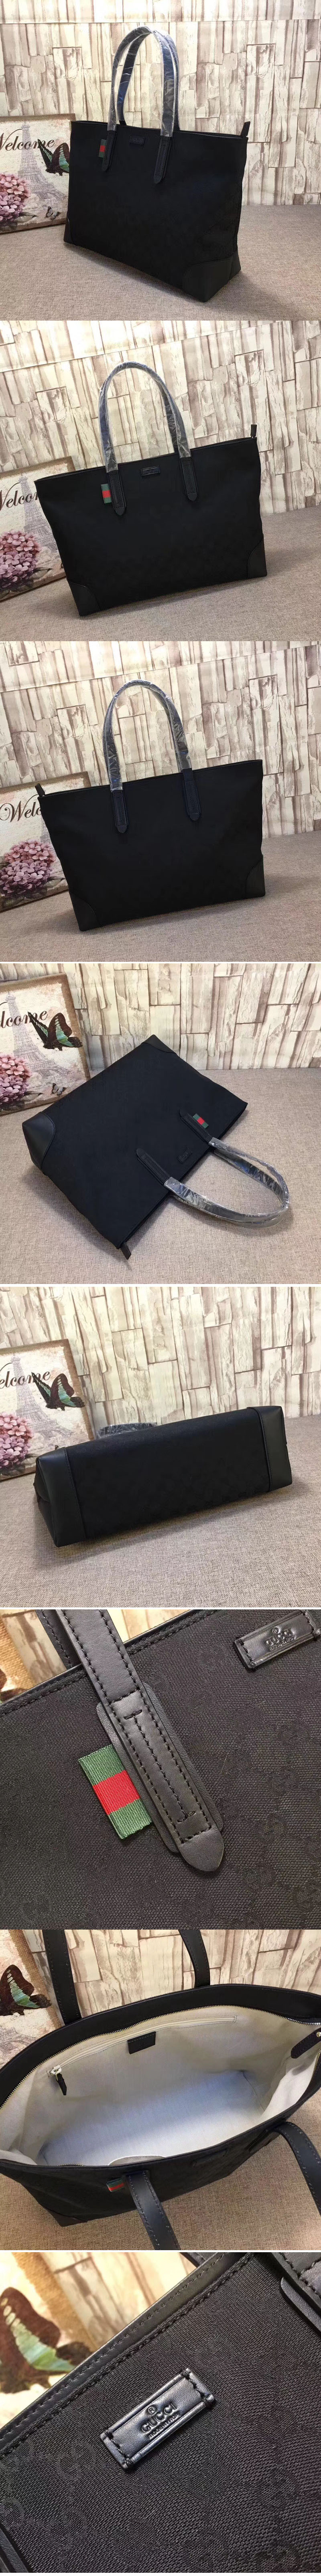 Replica Gucci 308928 Large Original GG Canvas Tote Bags Black